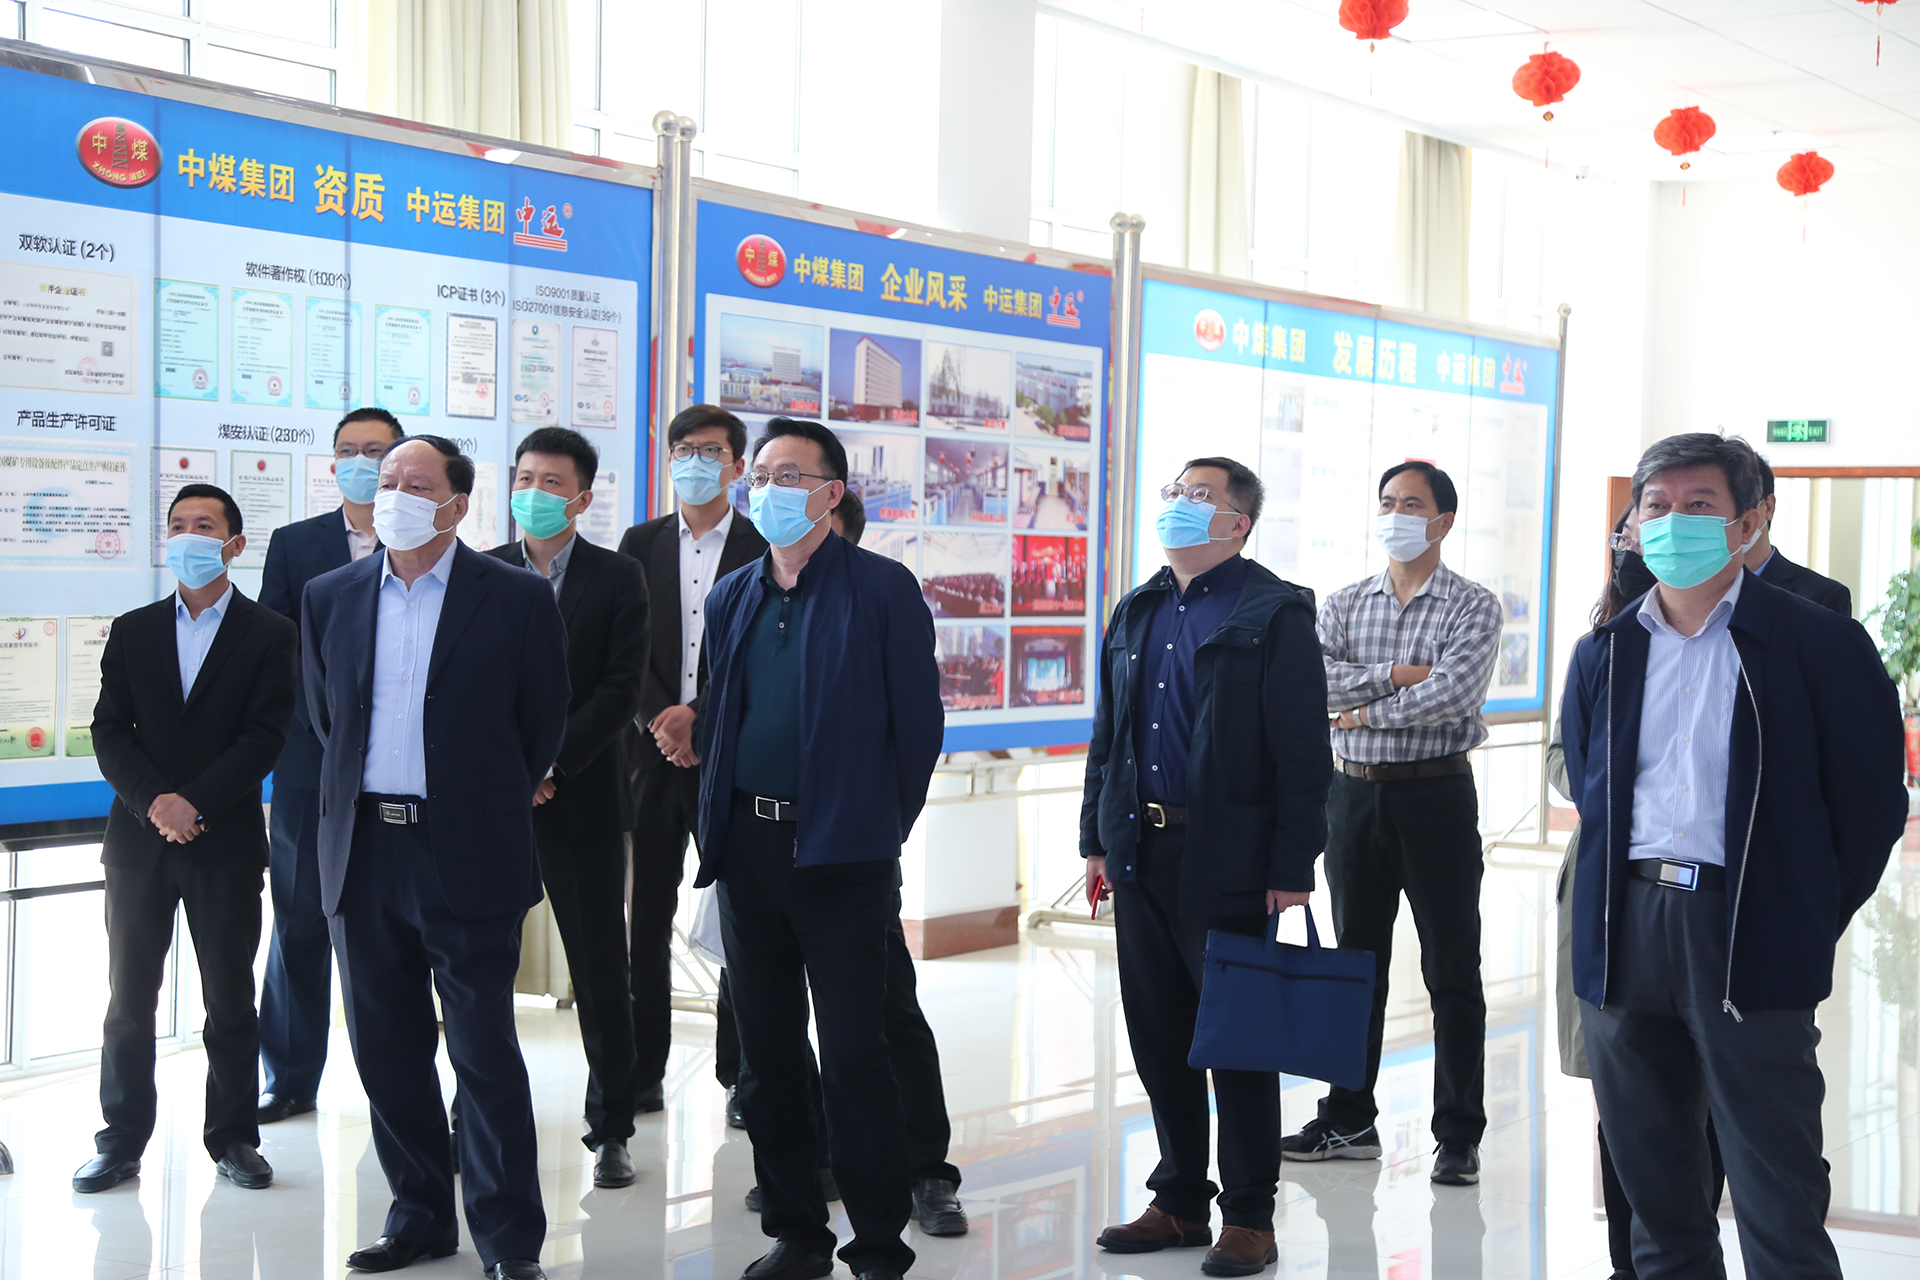 Сердечно приветствуем руководителей Академии общественных наук Шаньдун в China Coal Group